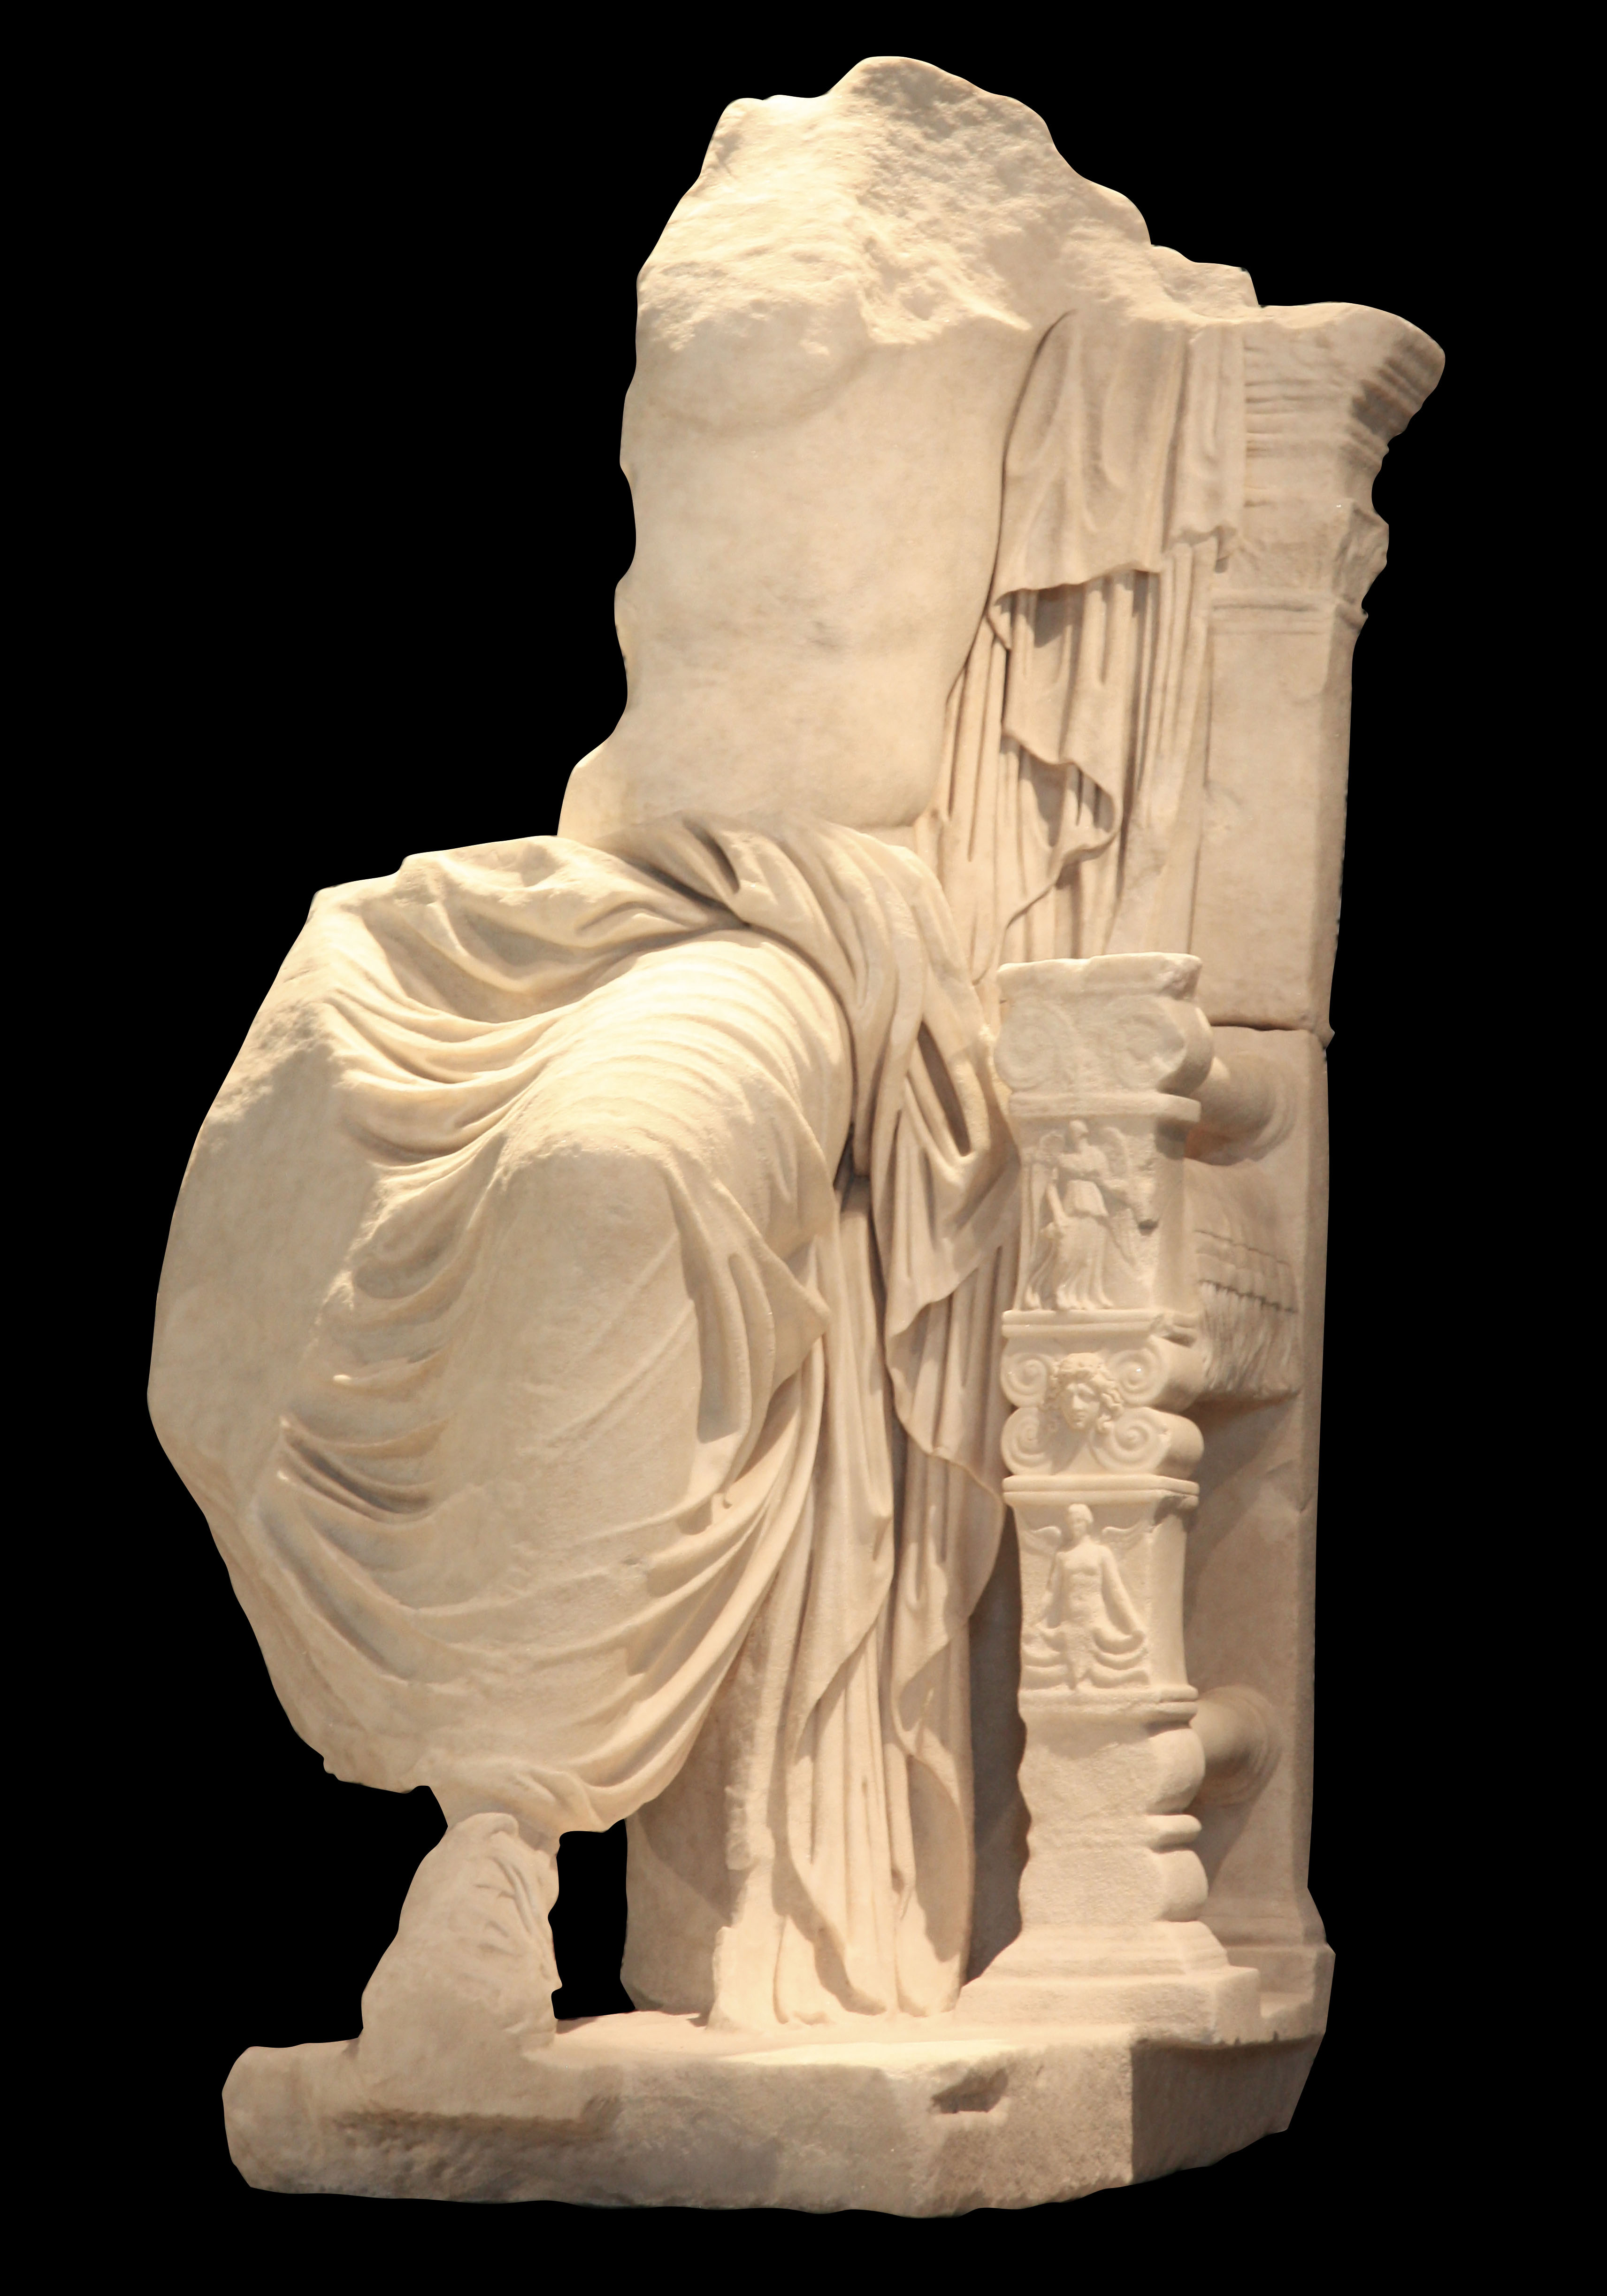  Sulle tracce di Caligola, mostra sulle  storie di grandi recuperi archeologici